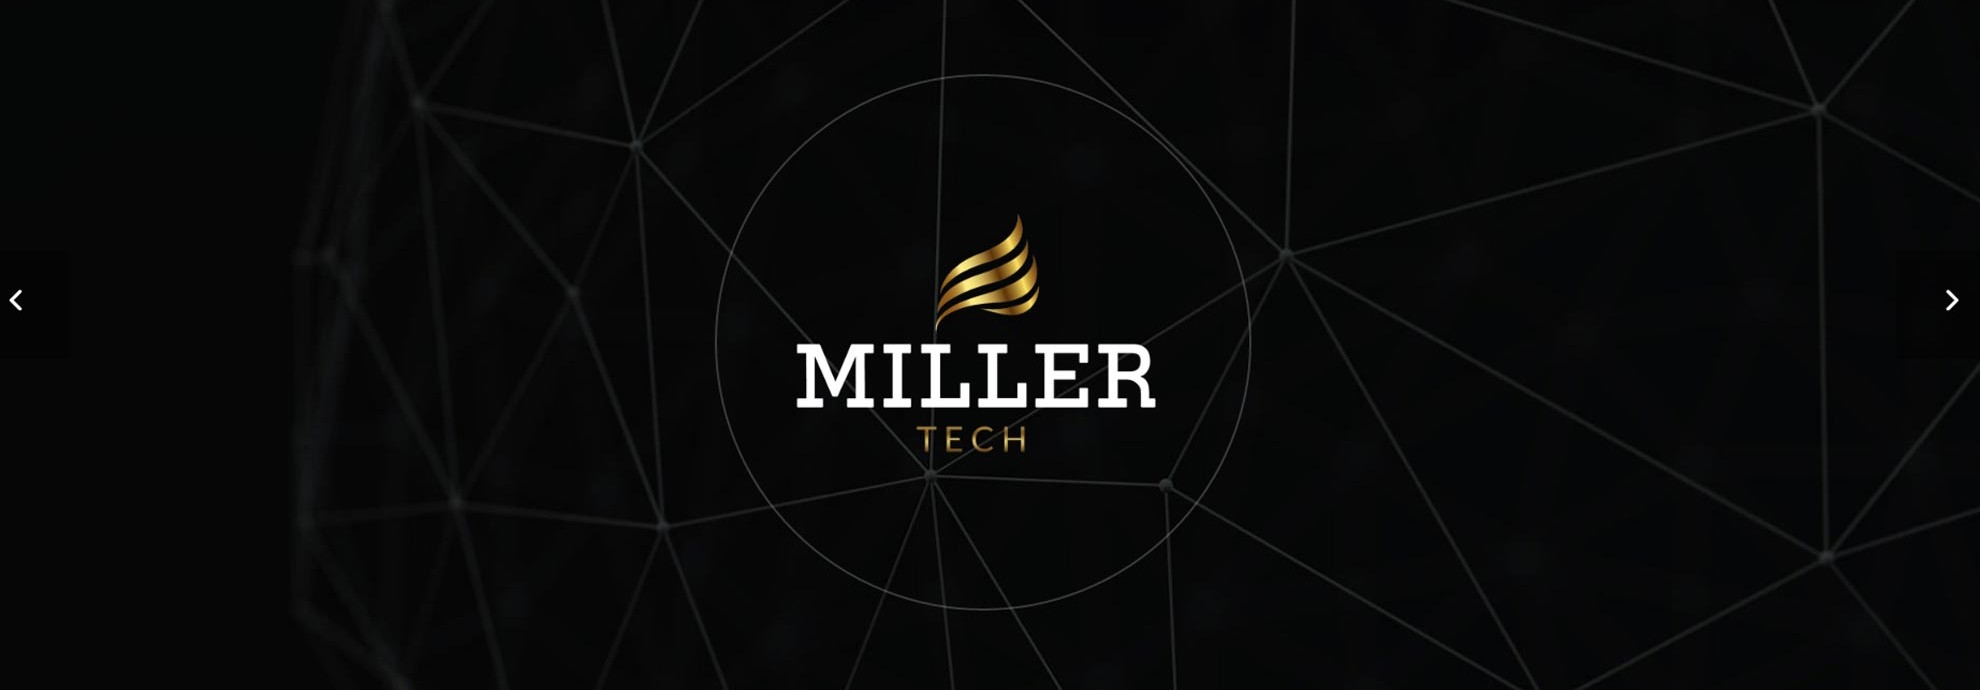 Millertech website